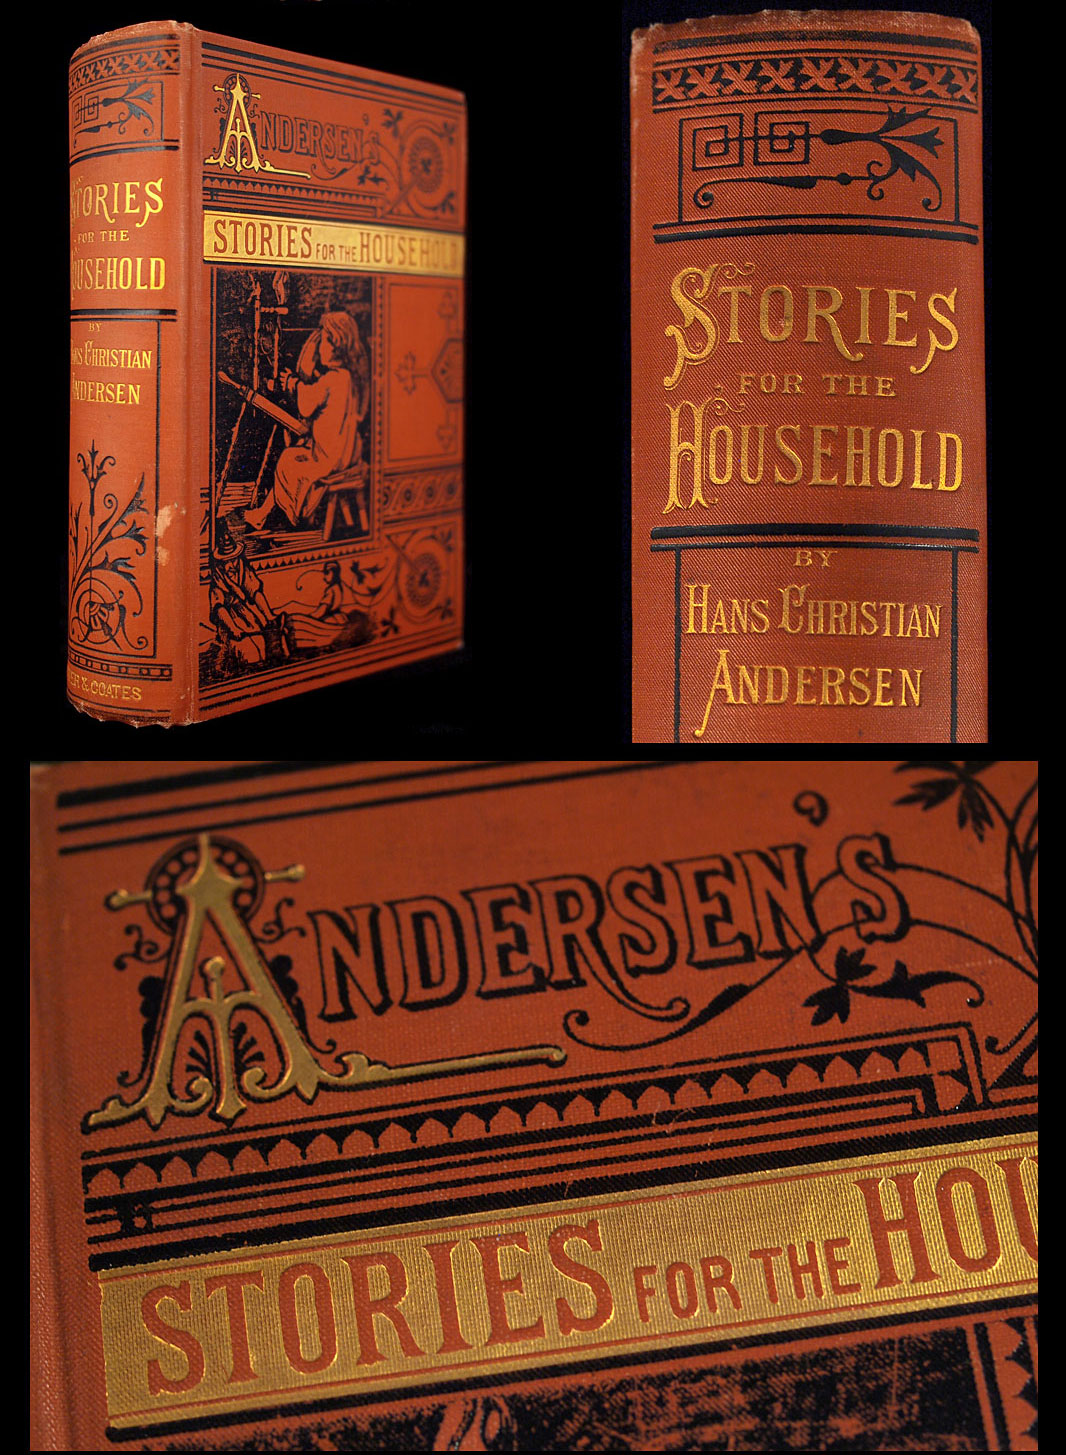 Hans Christian Andersen by Paul Binding